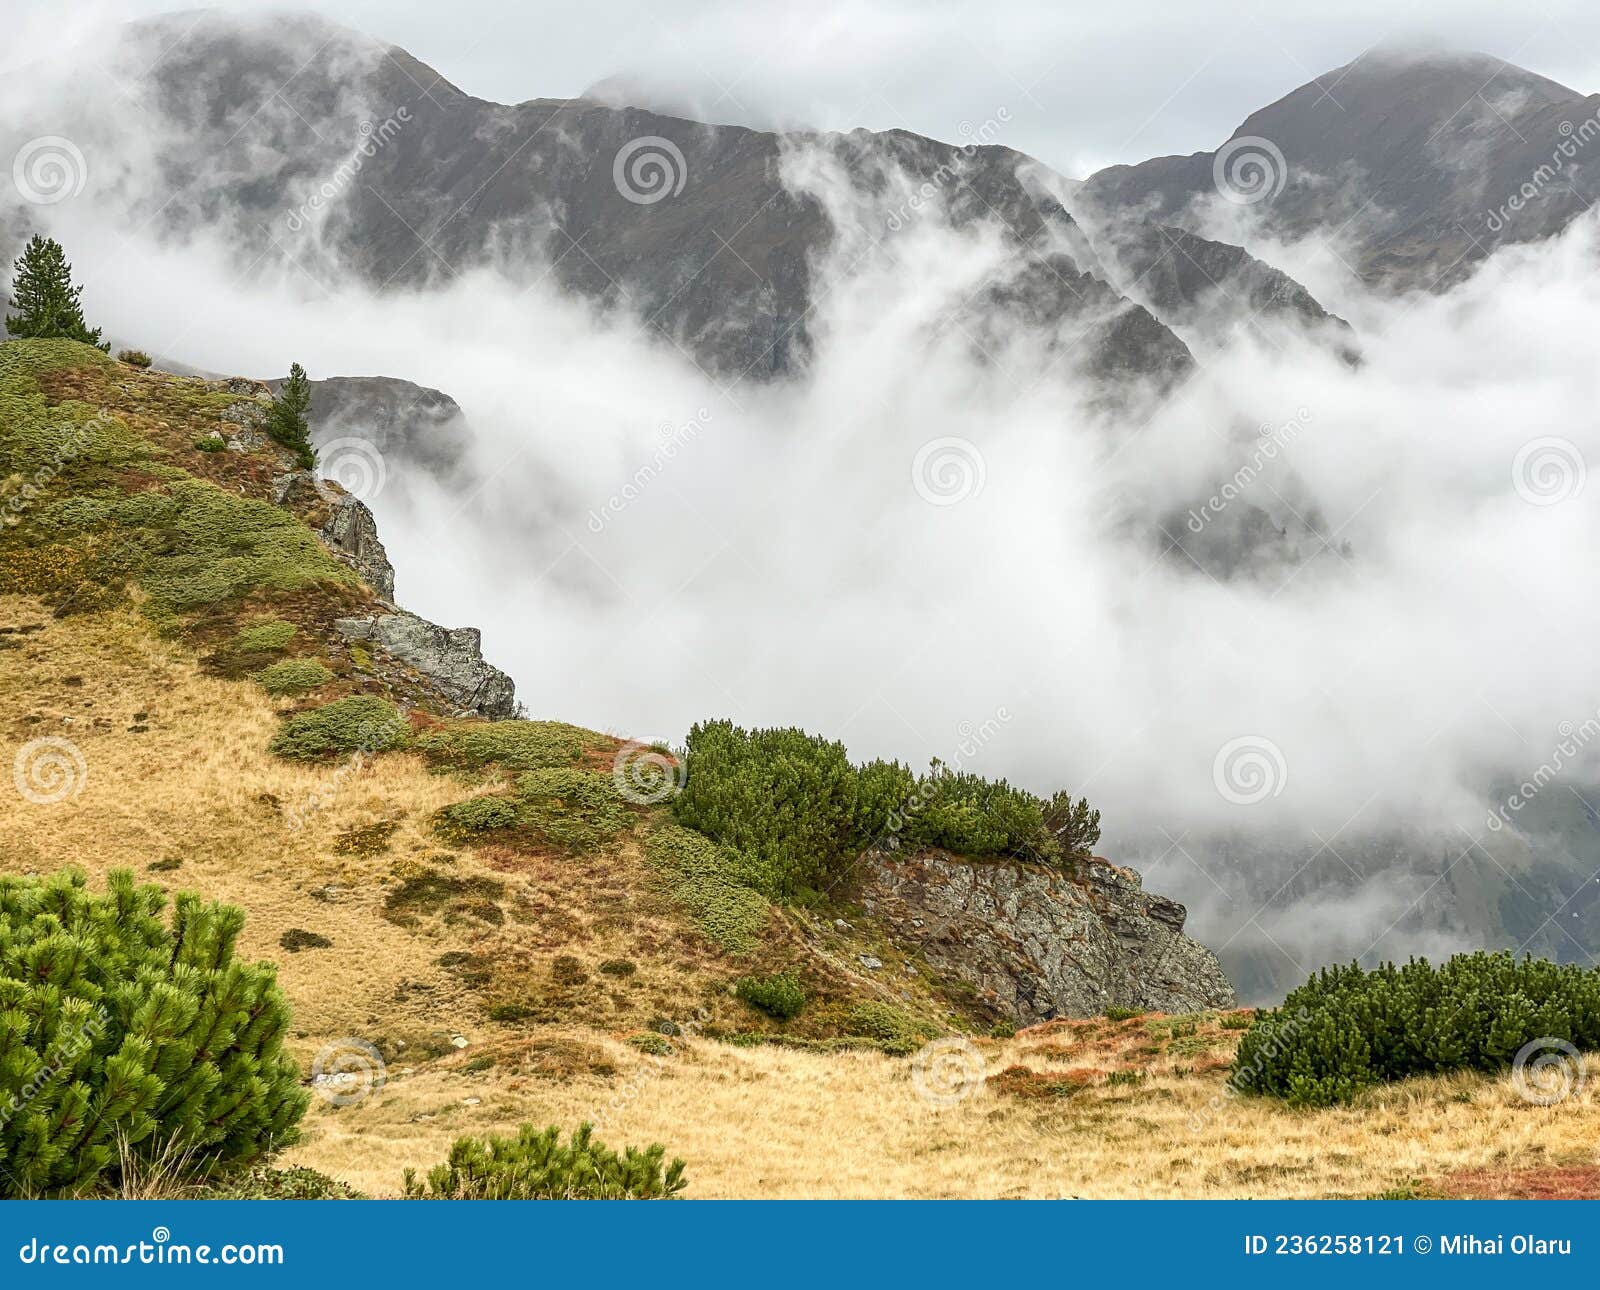 fagaras mountain in a cloudy day around valea rea path